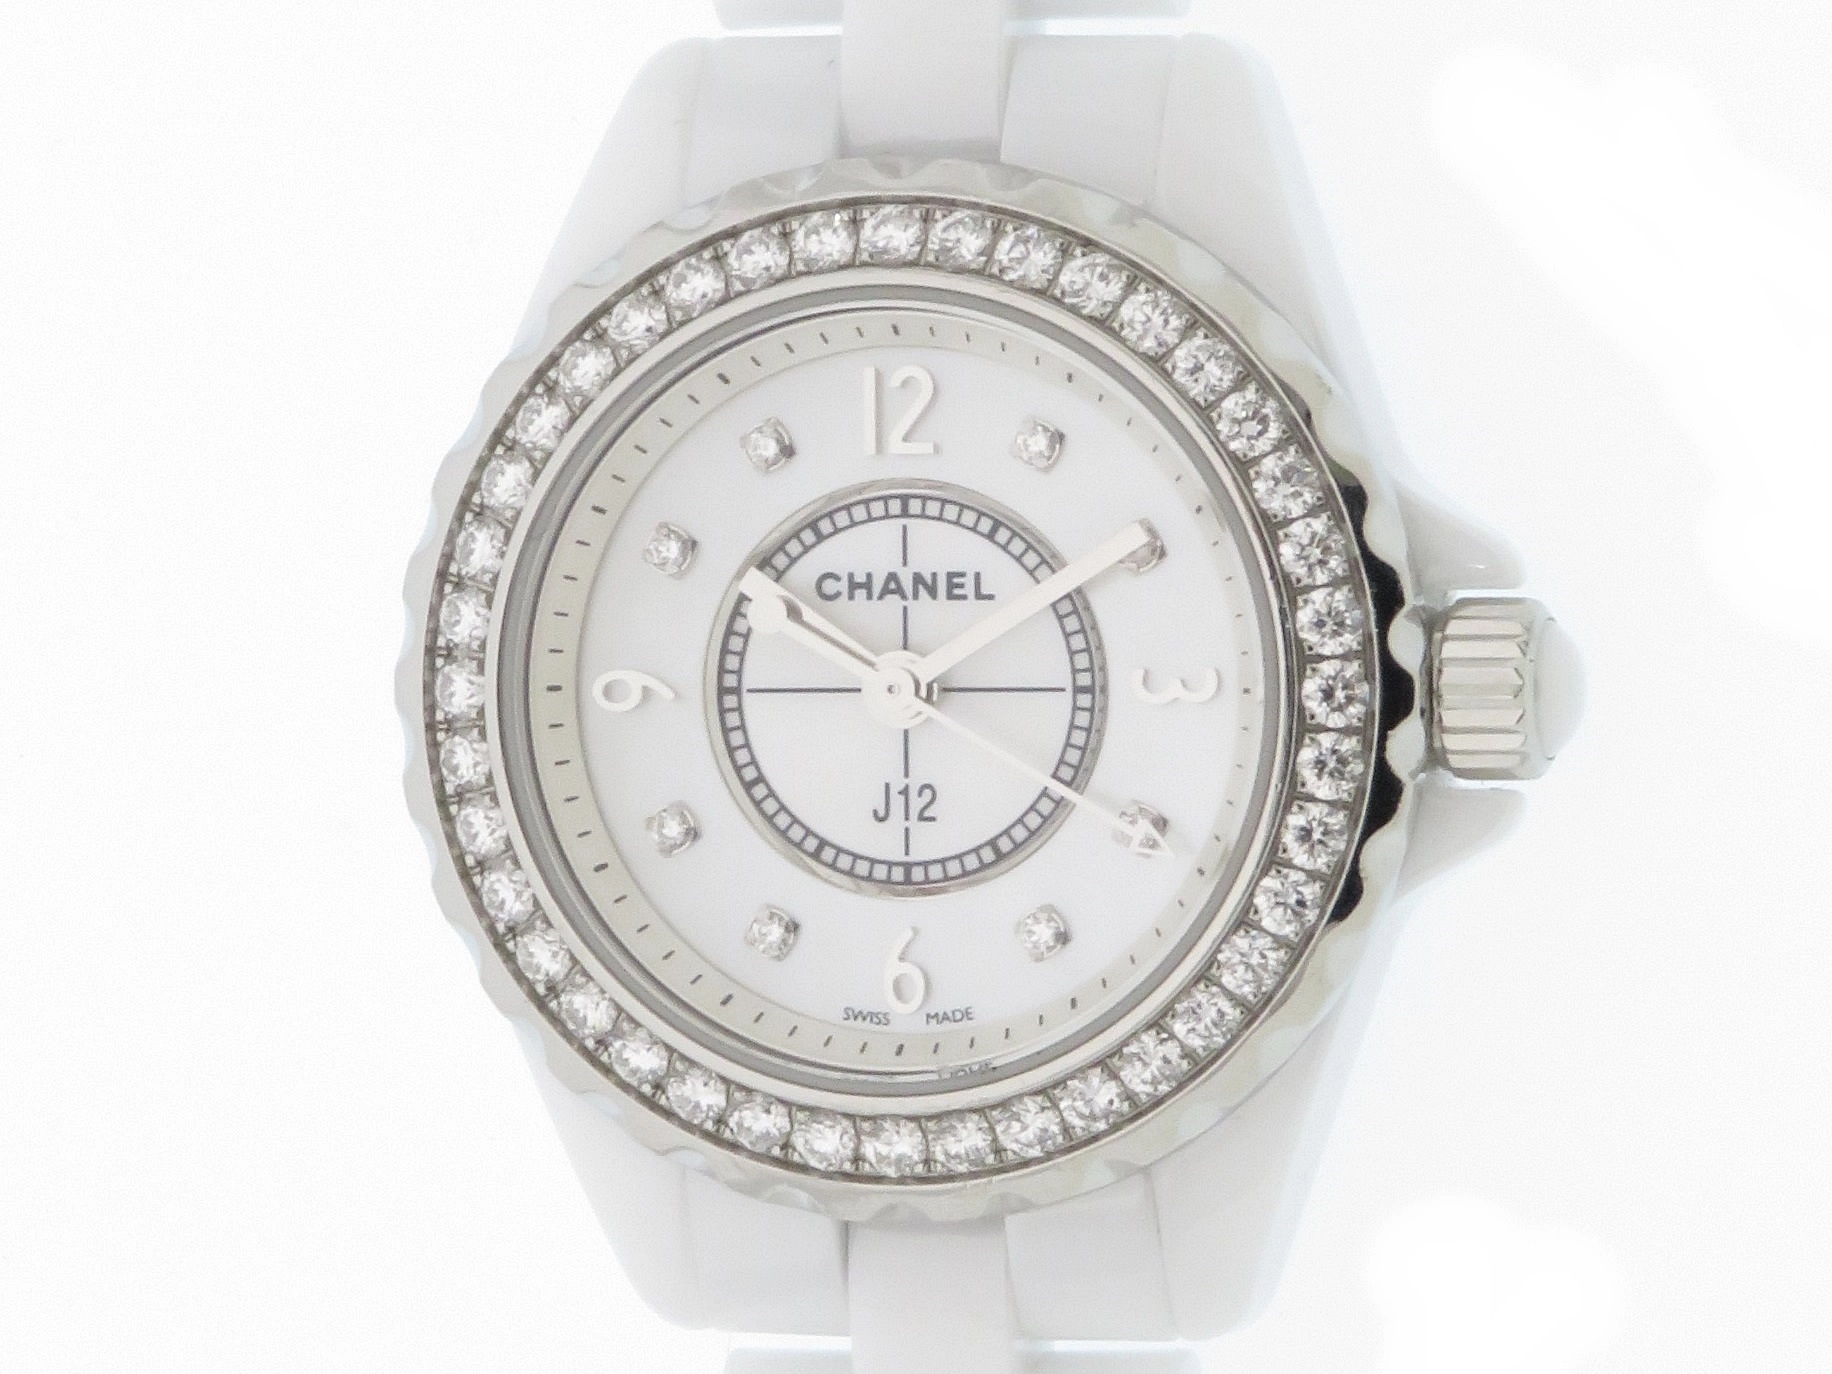 シャネル CHANEL 腕時計 J12 29mm H2572 8ポイント ダイヤモンド インデックス 計0.04ct 40ポイント ダイヤモンド ベゼル 計0.90ct ホワイト シェル 文字盤 SS ホワイト セラミック 白 クオーツアナログ